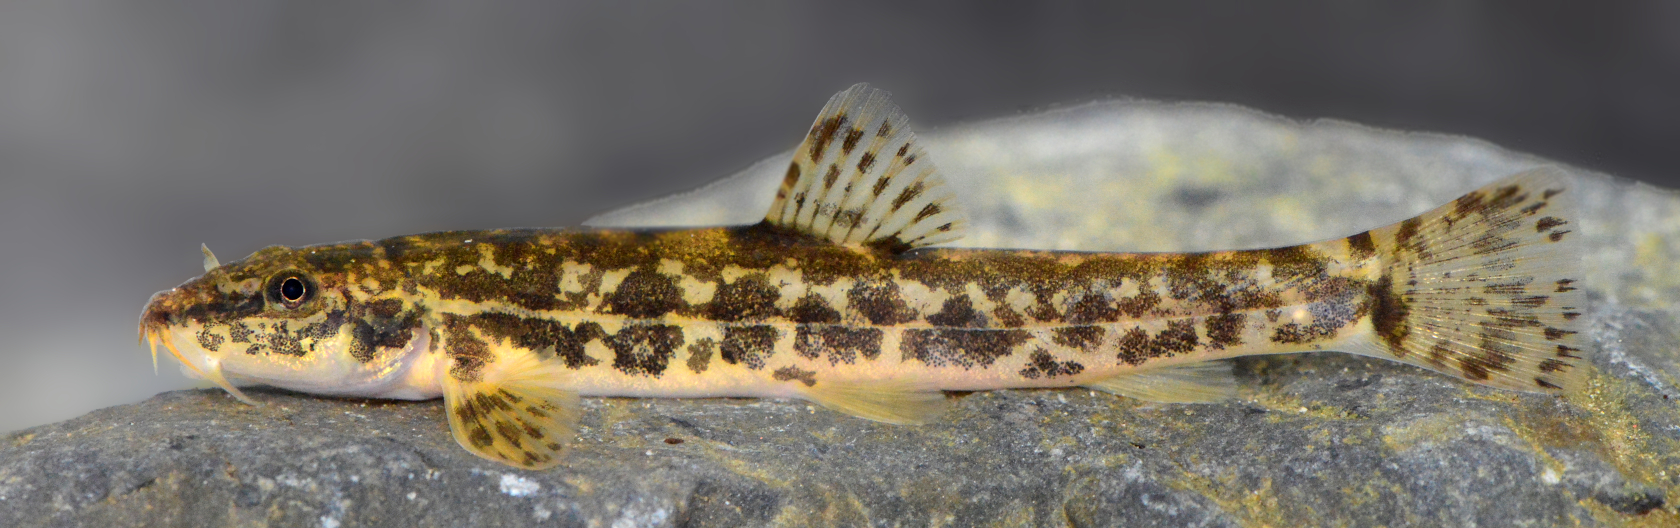 Die Bachschmerle Barbatula barbatula gehört vor allem in den Mittelgebirgen oft zu den häufigsten Fischarten. Sie gilt als „ungefährdet“. Foto: Jörg Freyhof